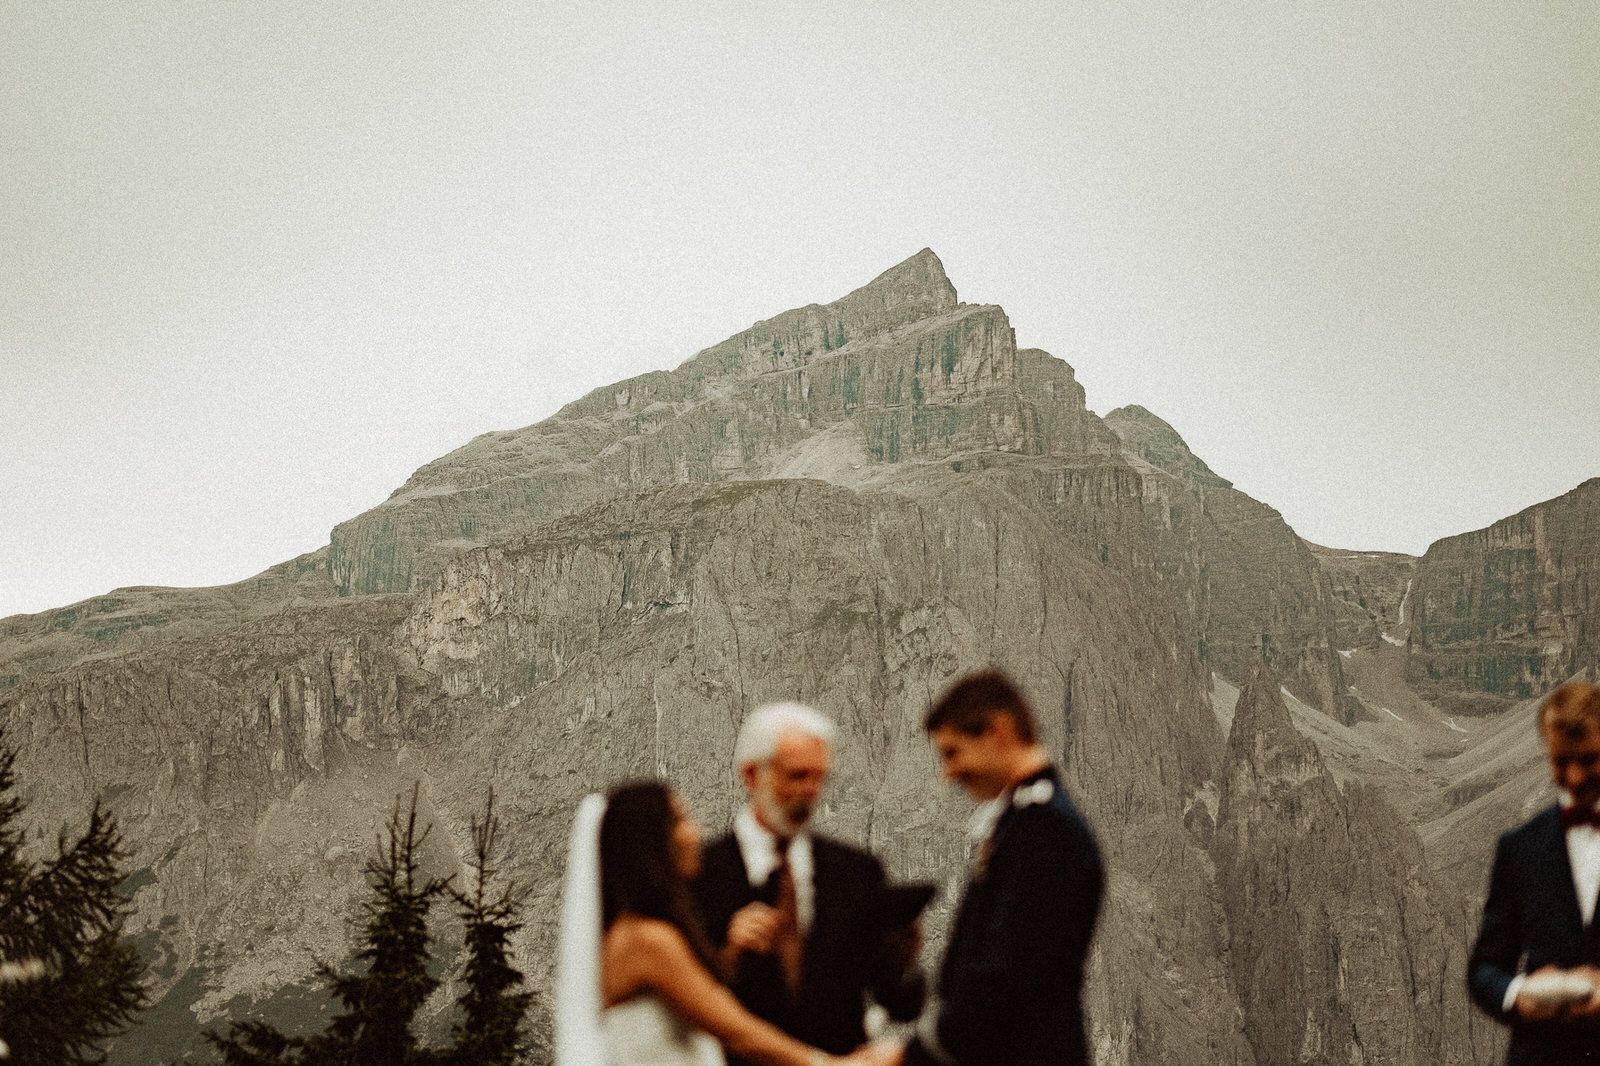 Ceremony Gallery - Wedding in the Dolomites, Colfosco, Italy - Italian Apls